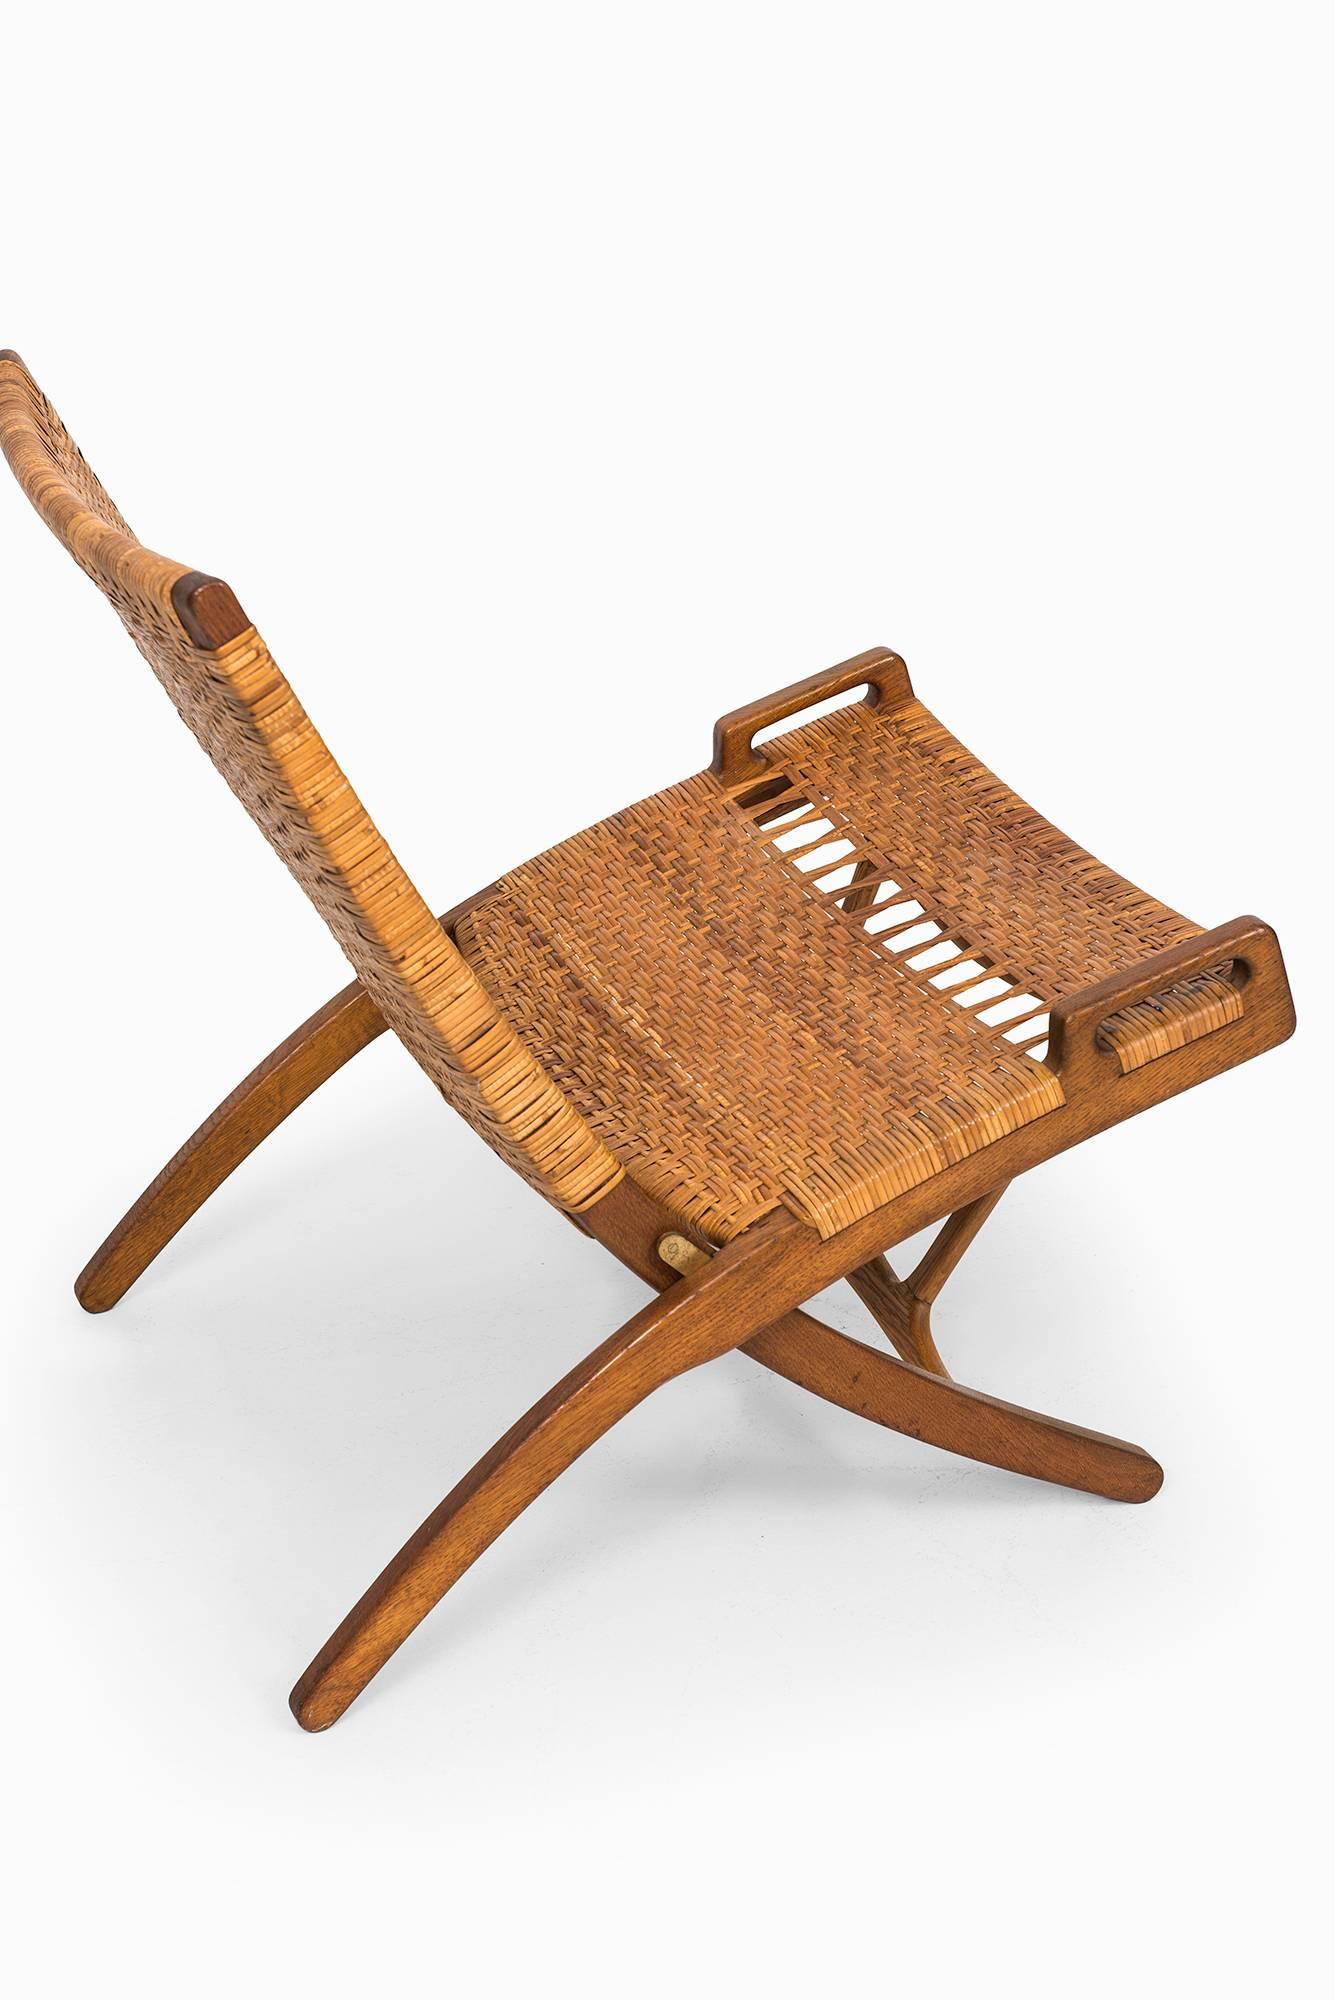 Rare folding chair model JH512 designed by Hans Wegner. Produced by Johannes Hansen in Denmark.